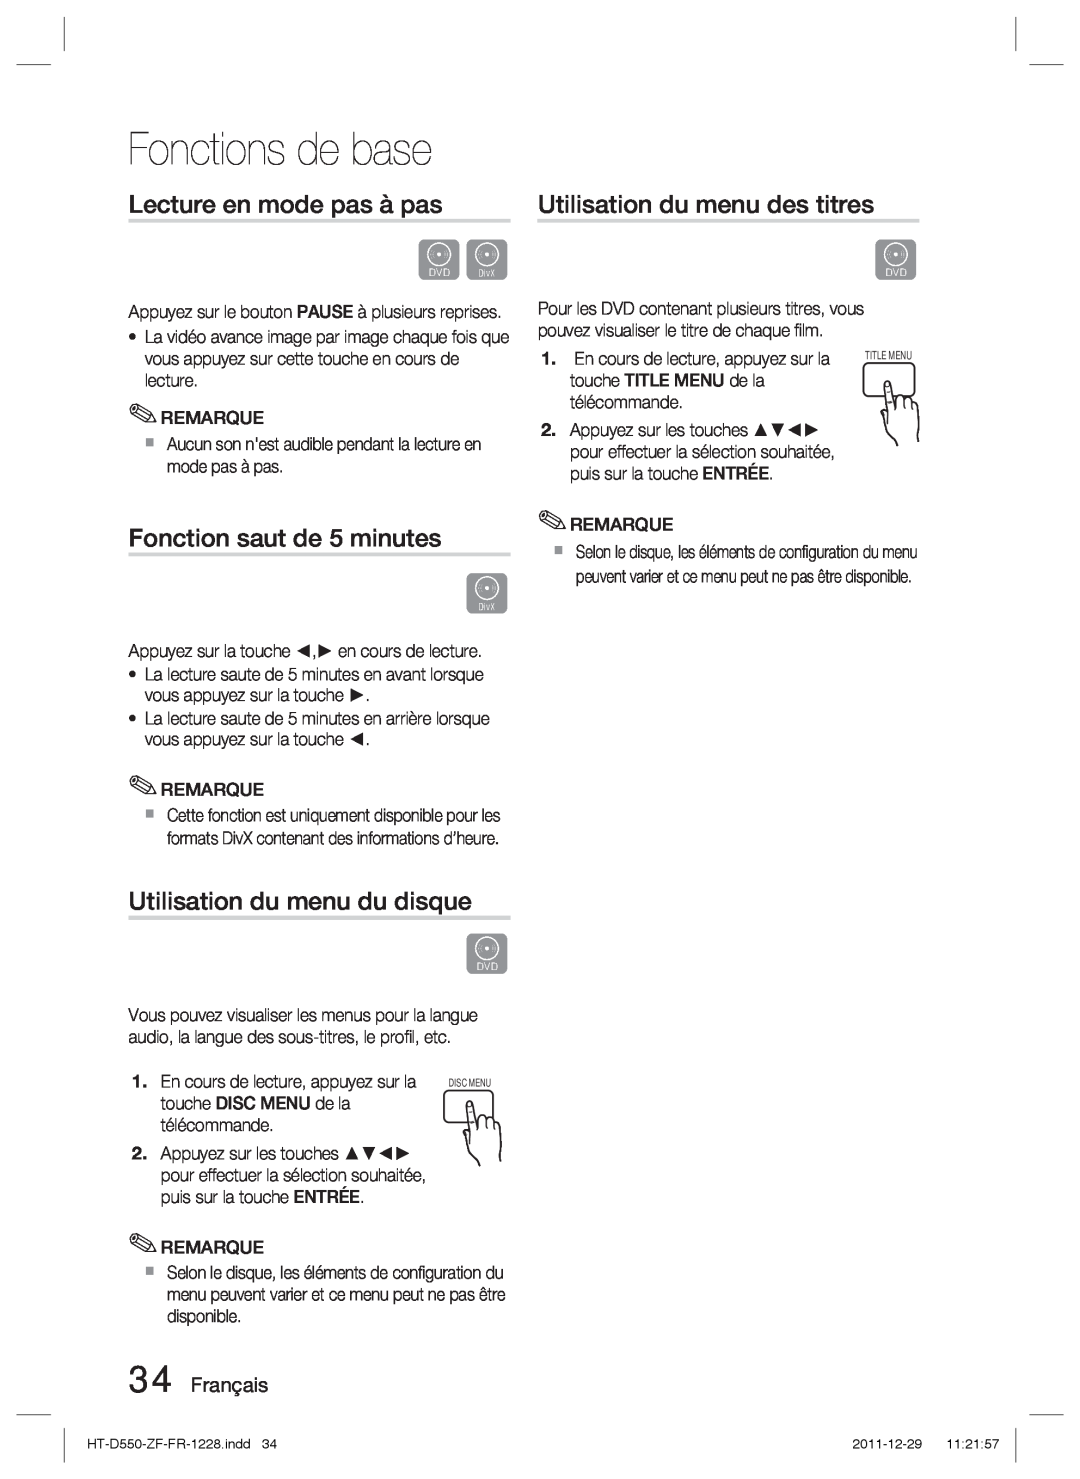 Samsung HT-D555/EN manual Lecture en mode pas à pas, Fonction saut de 5 minutes, Utilisation du menu du disque, Français 